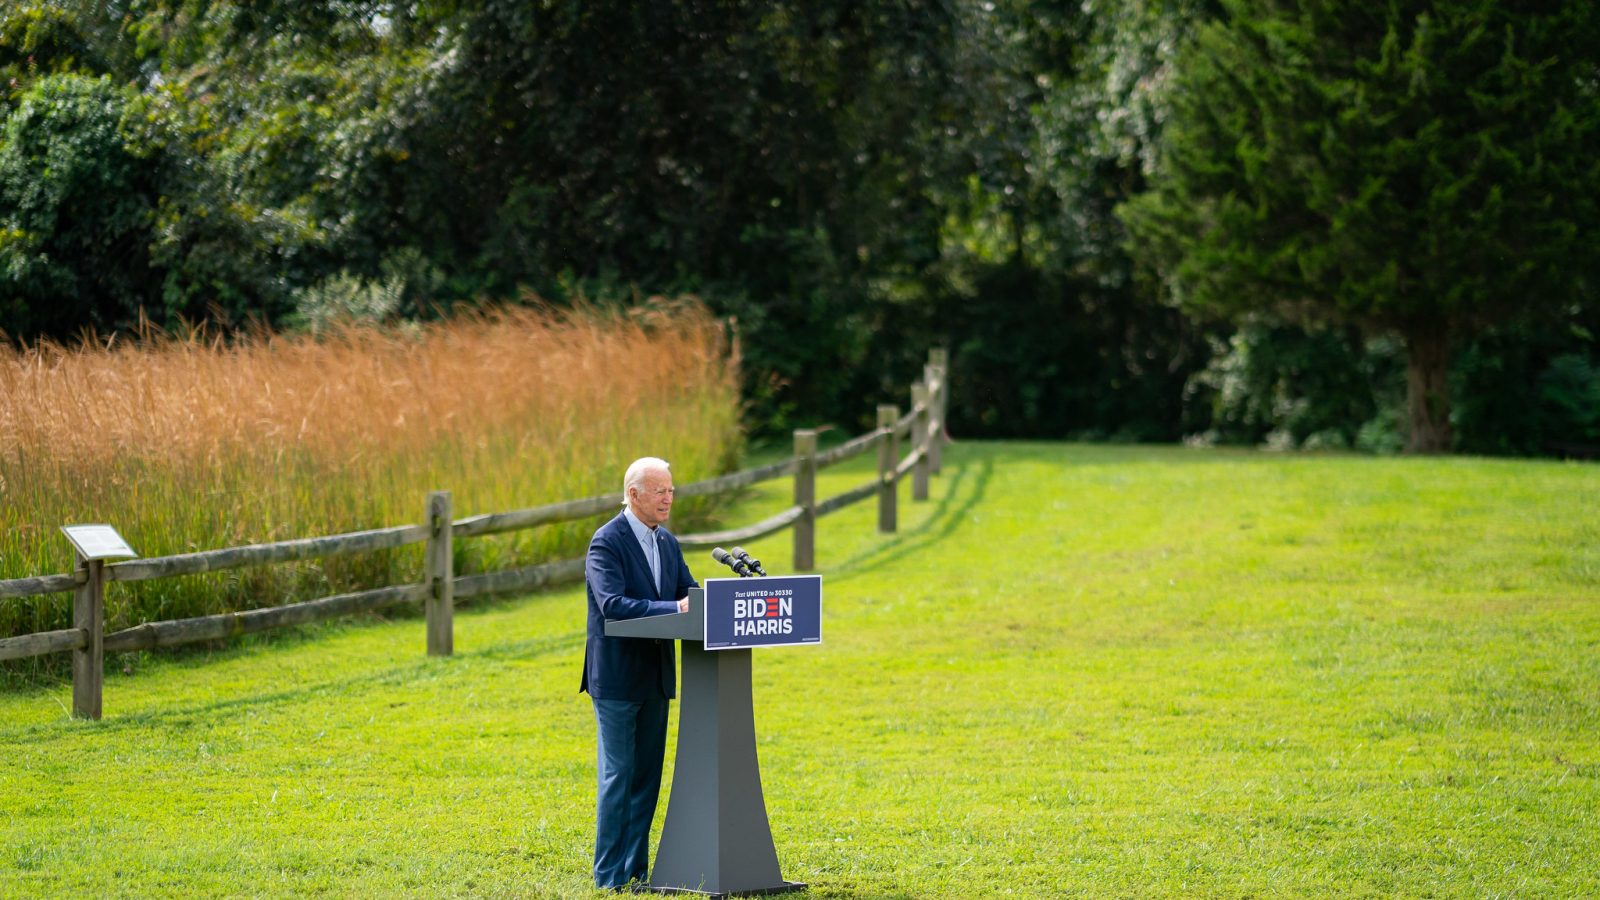 Then-candidate Joe Biden giving a speech on the environment